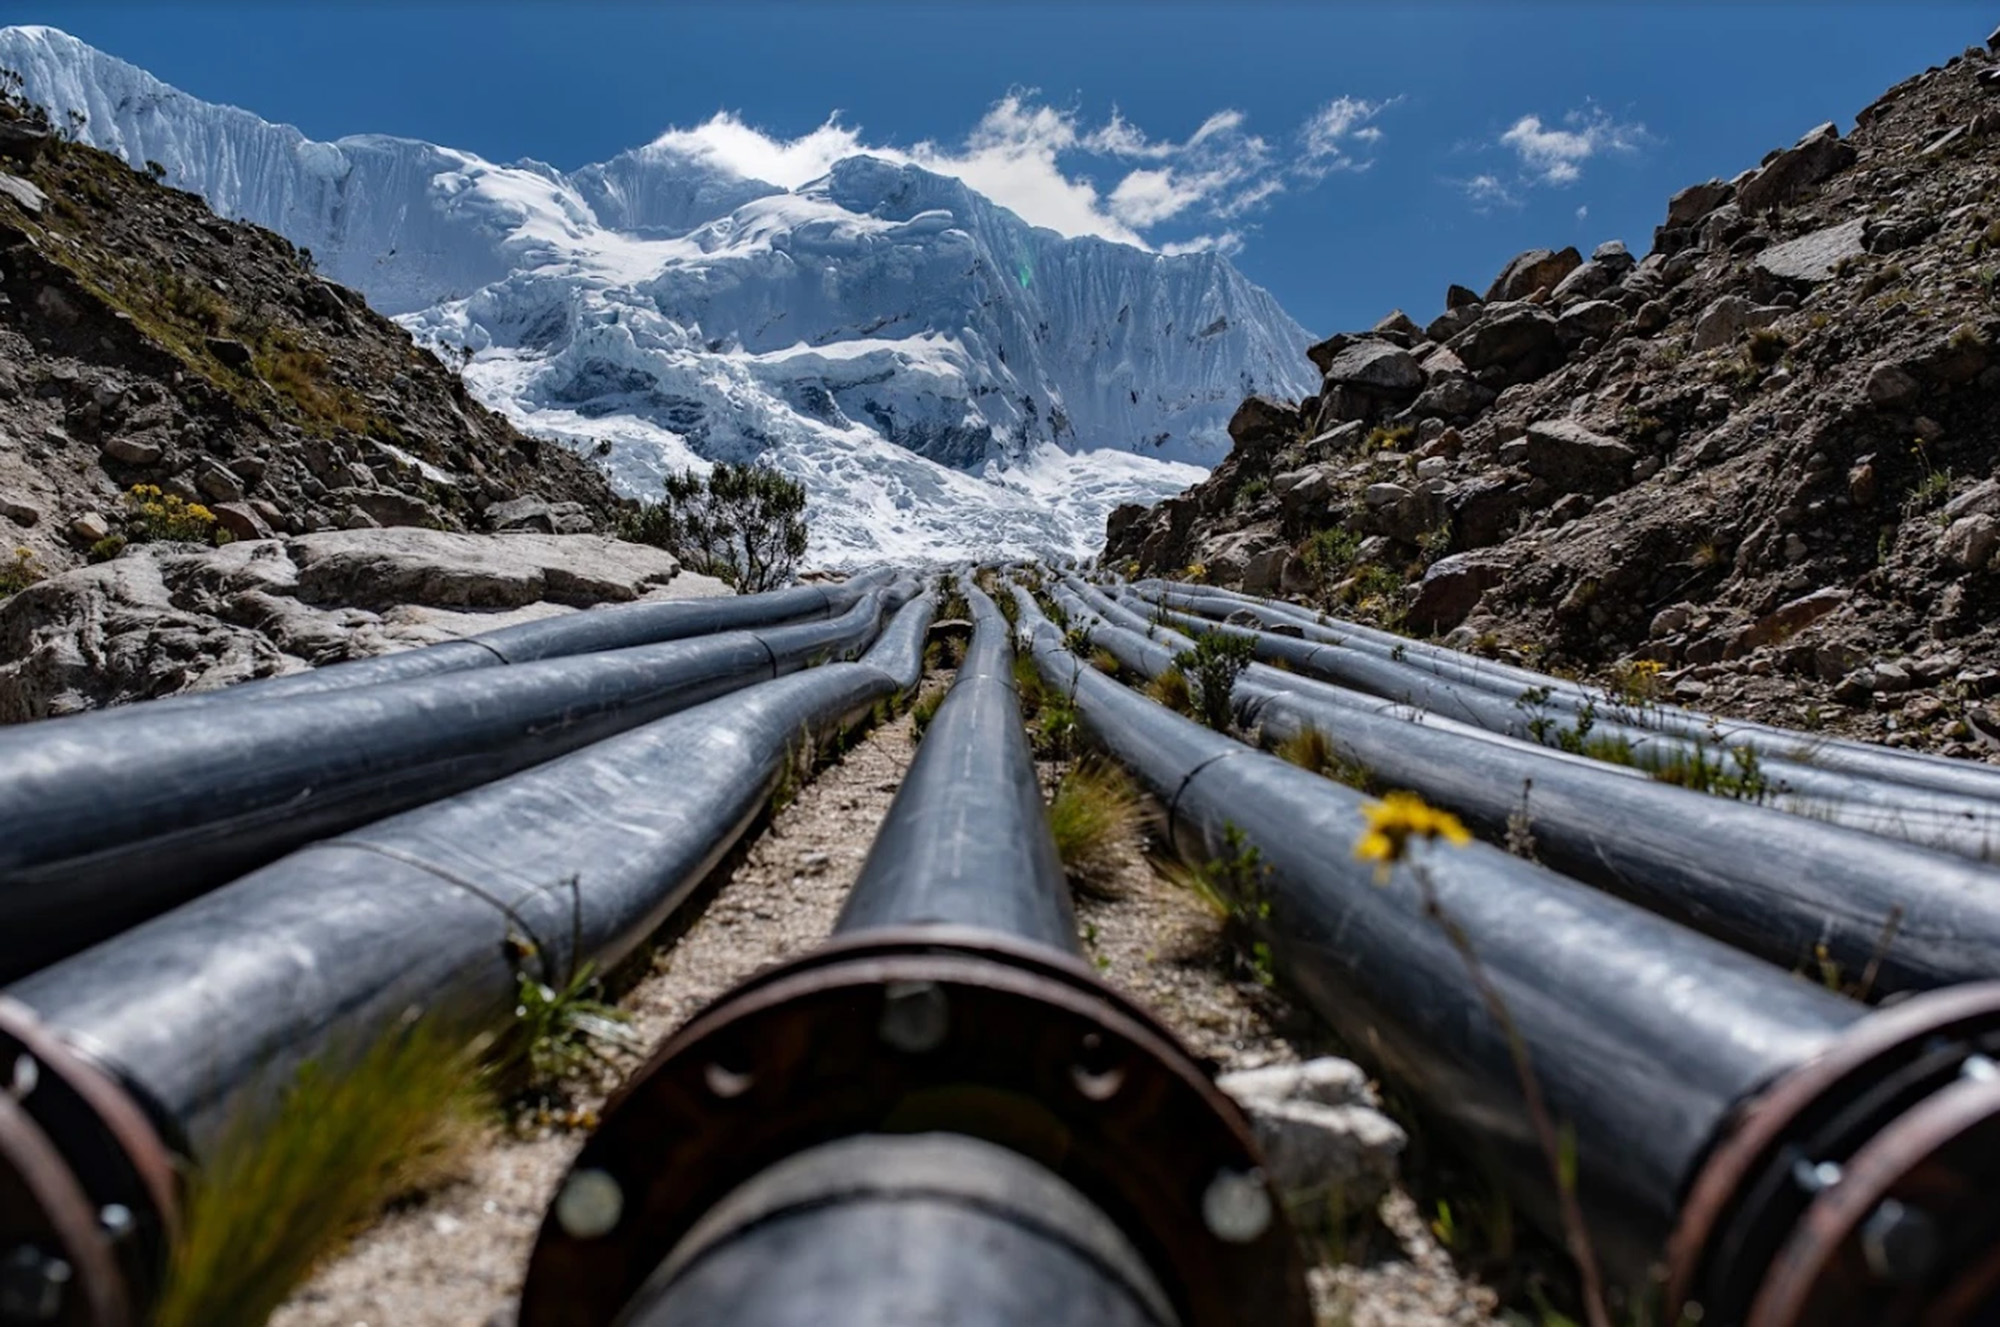 ‘Battle of science’ rages over Peru glacier